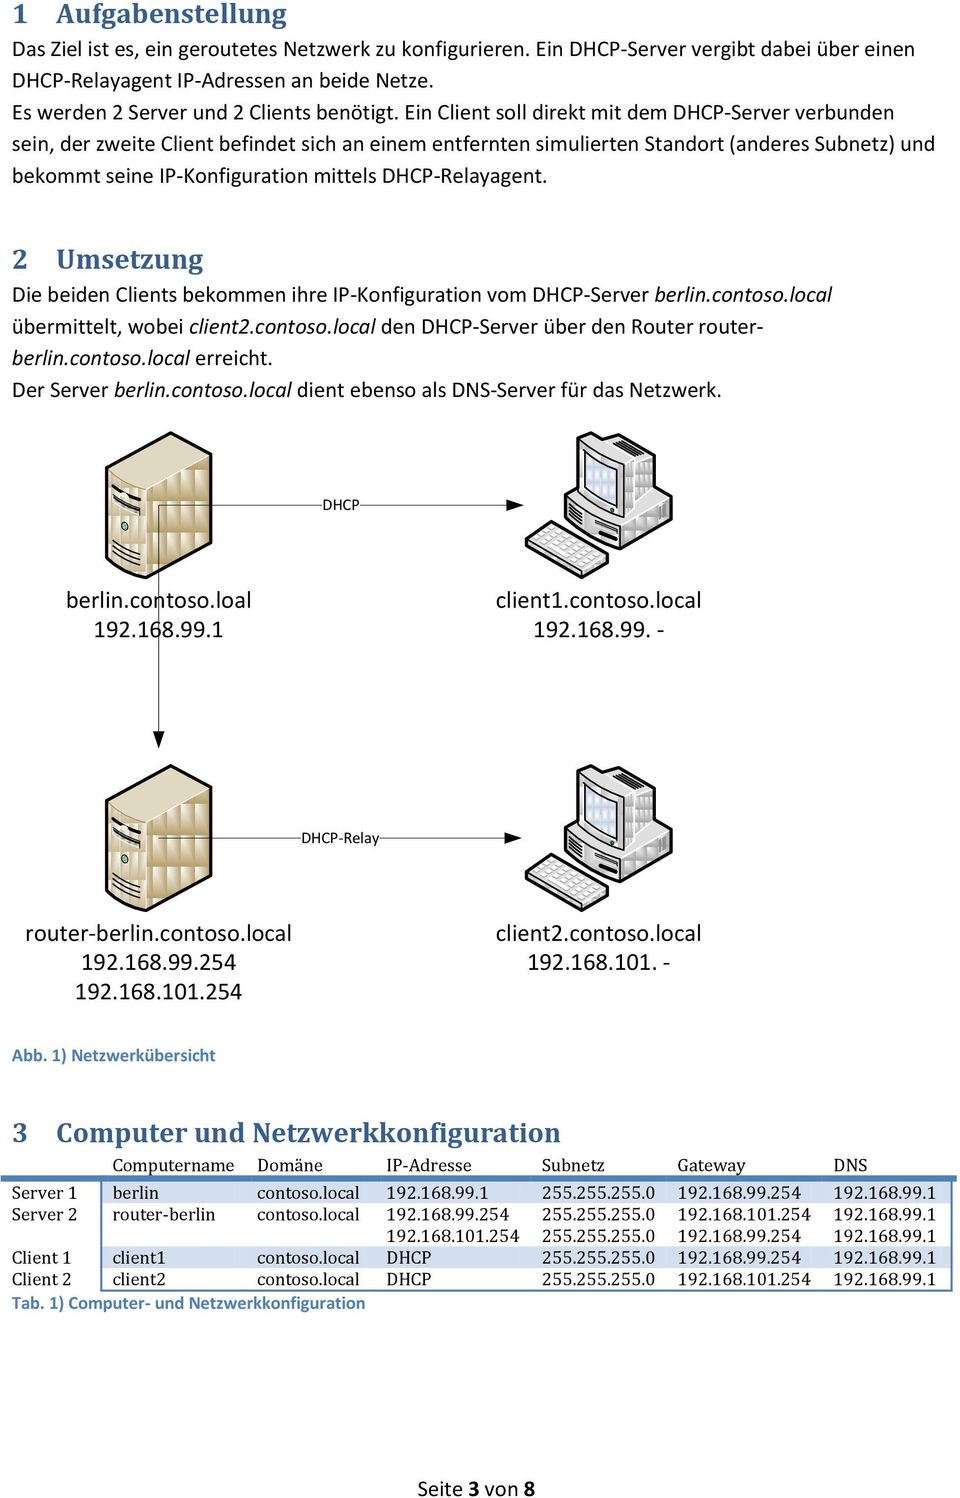 Ein Client soll direkt mit dem DHCP-Server verbunden sein, der zweite Client befindet sich an einem entfernten simulierten Standort (anderes Subnetz) und bekommt seine IP-Konfiguration mittels